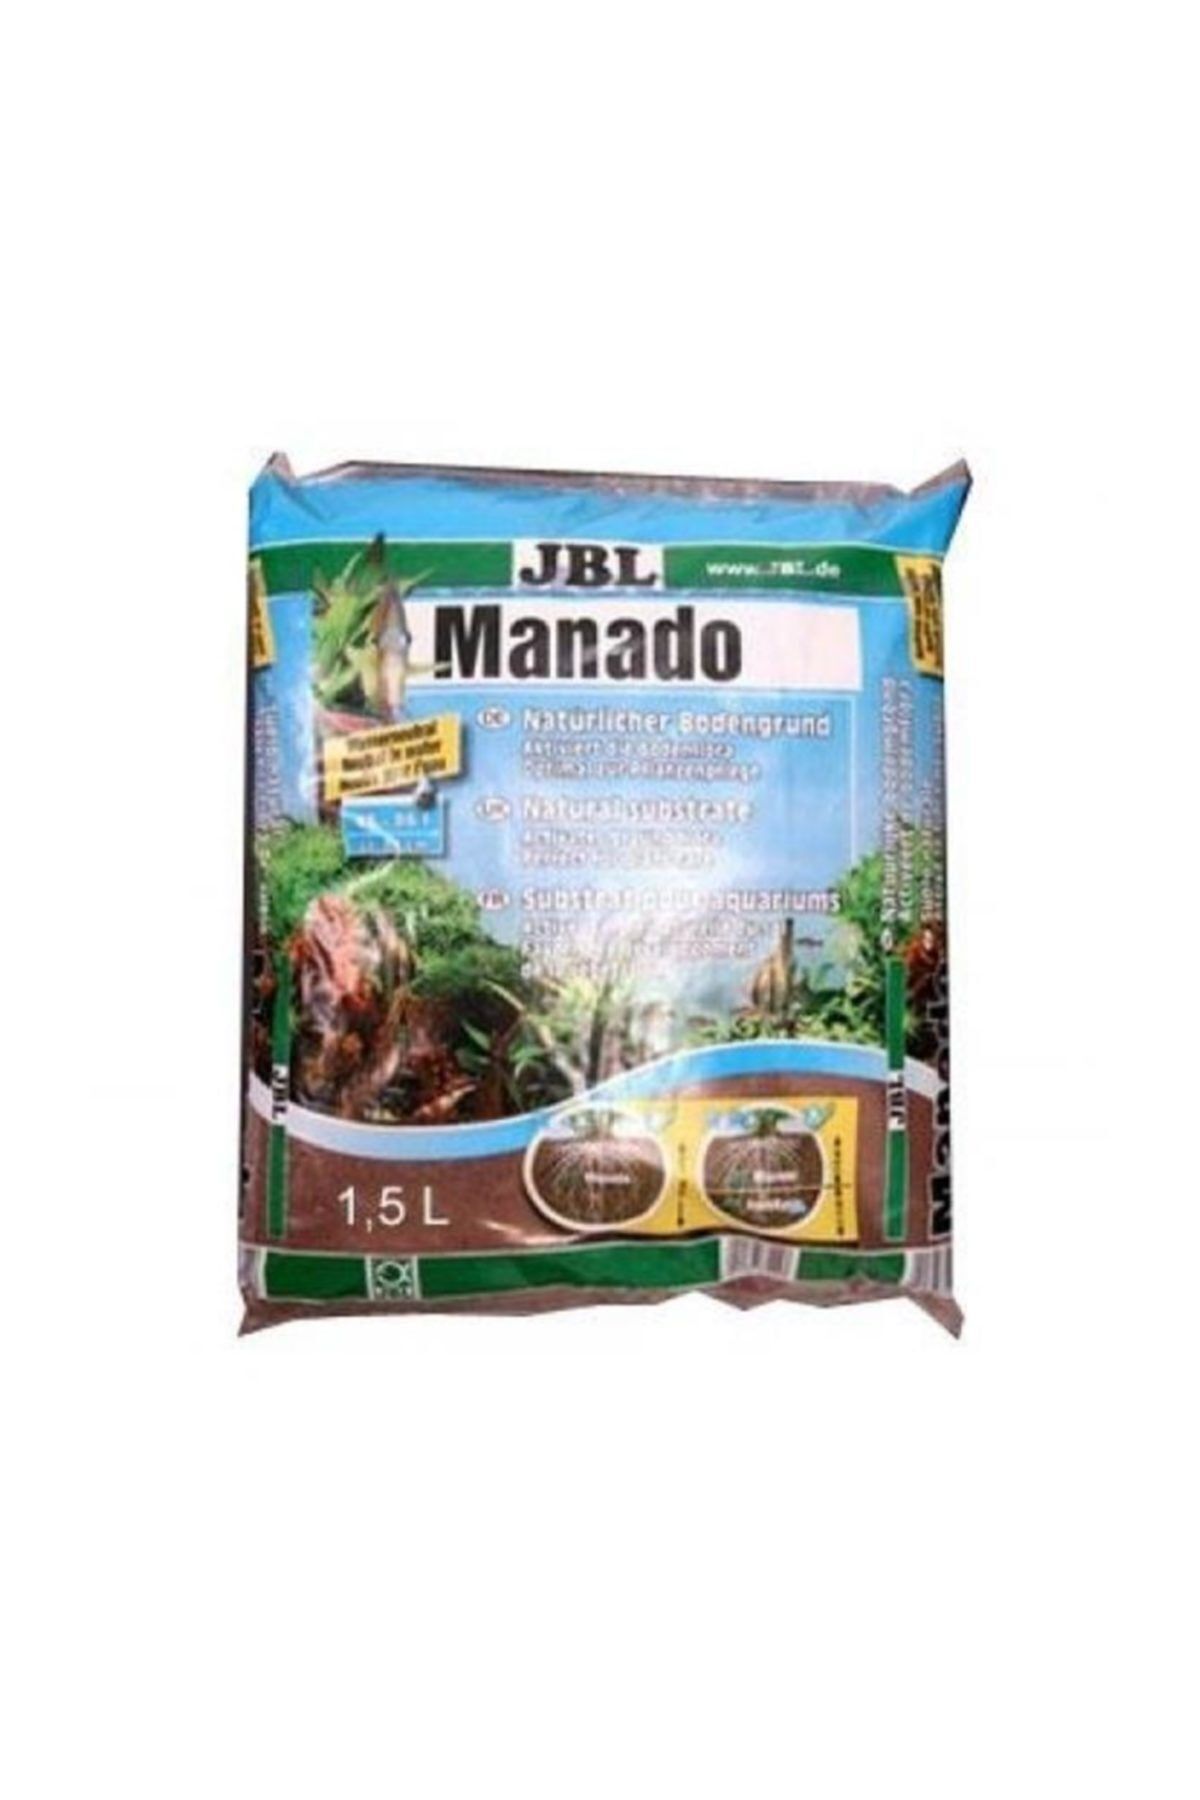 JBL Manado Akvaryum Bitki Kumu 1,5 Lt